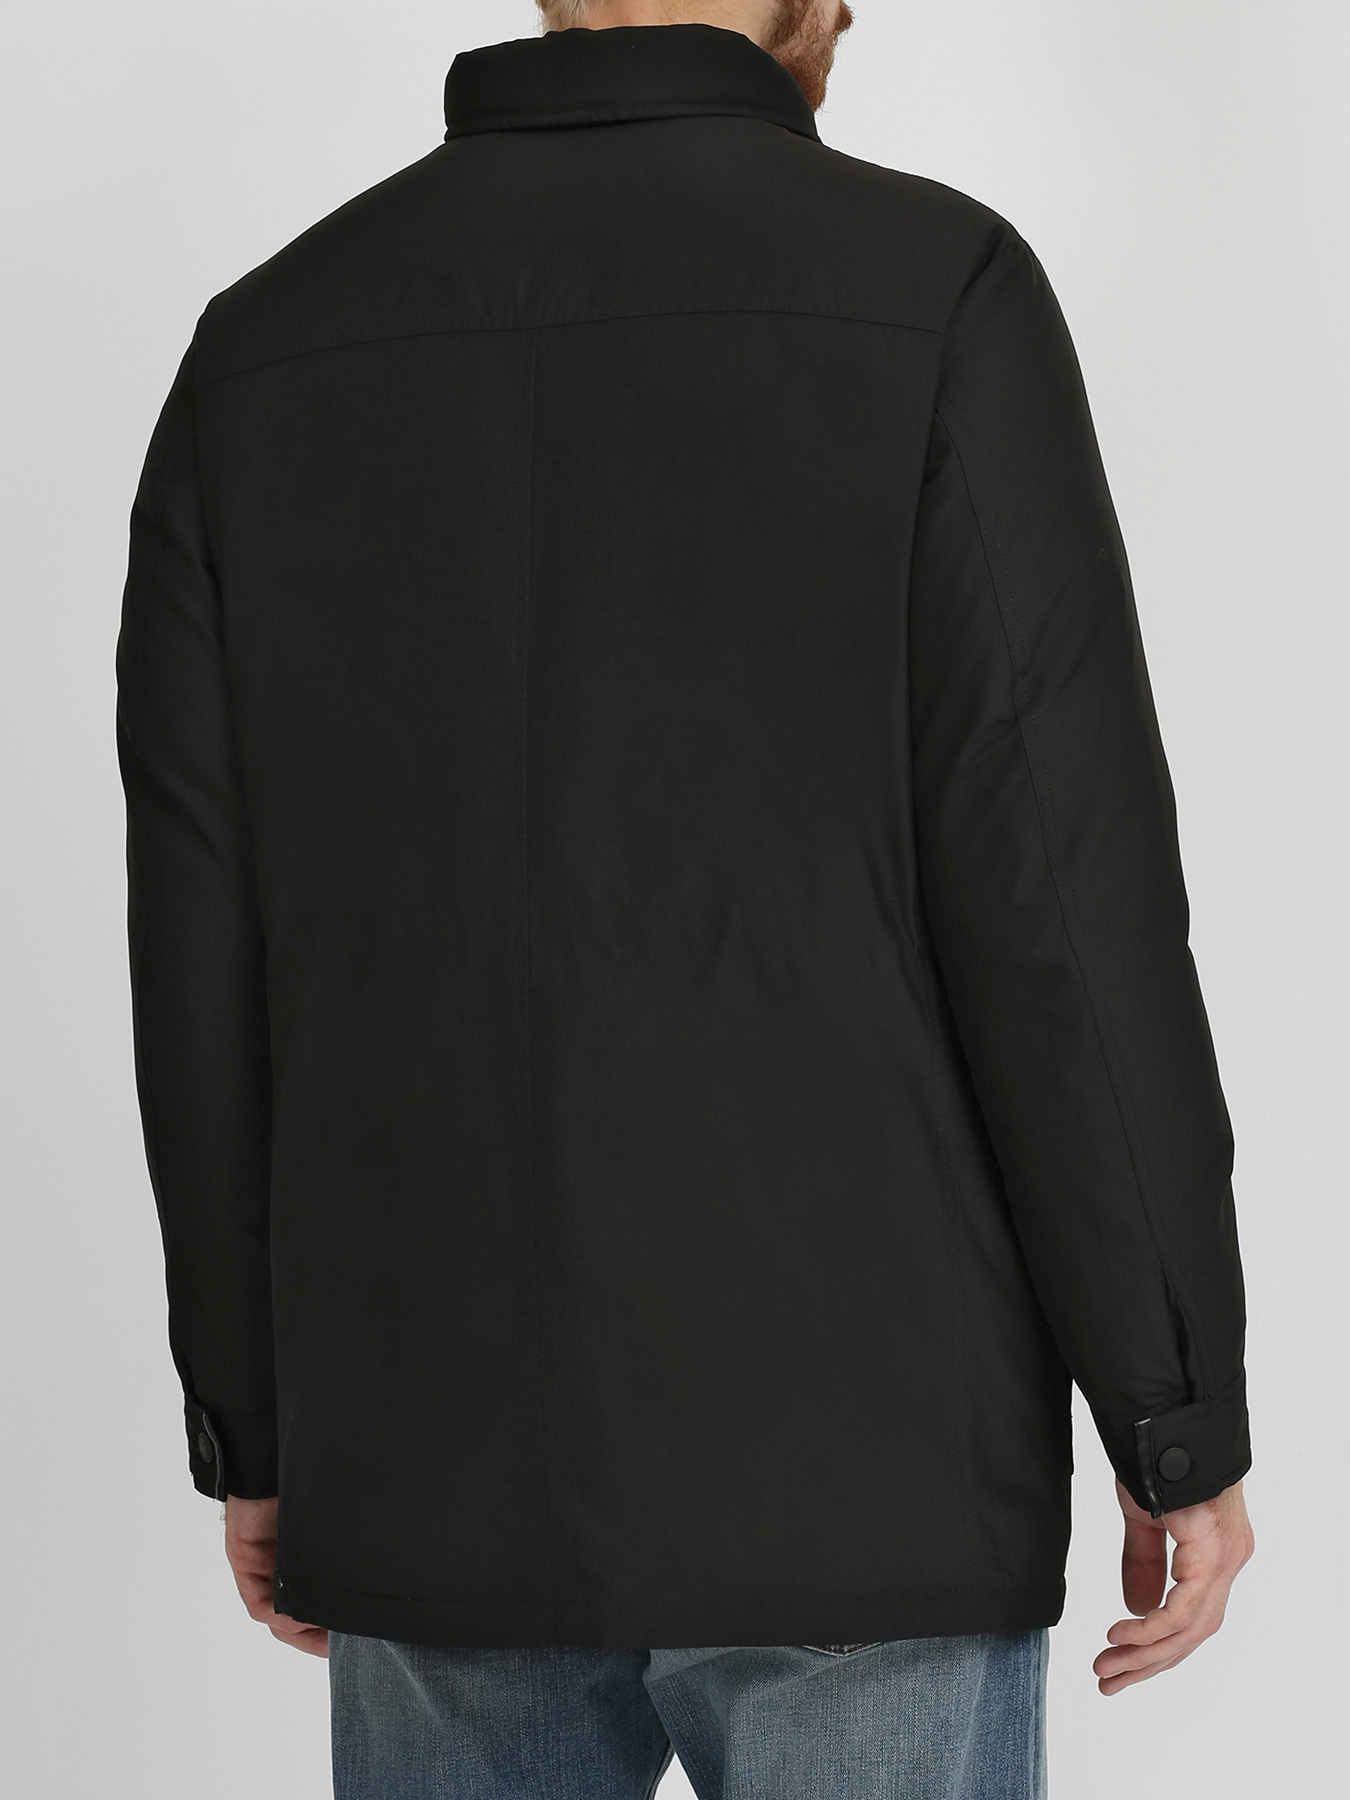 Alessandro Manzoni Jeans Куртка с капюшоном 316263-030 Фото 3